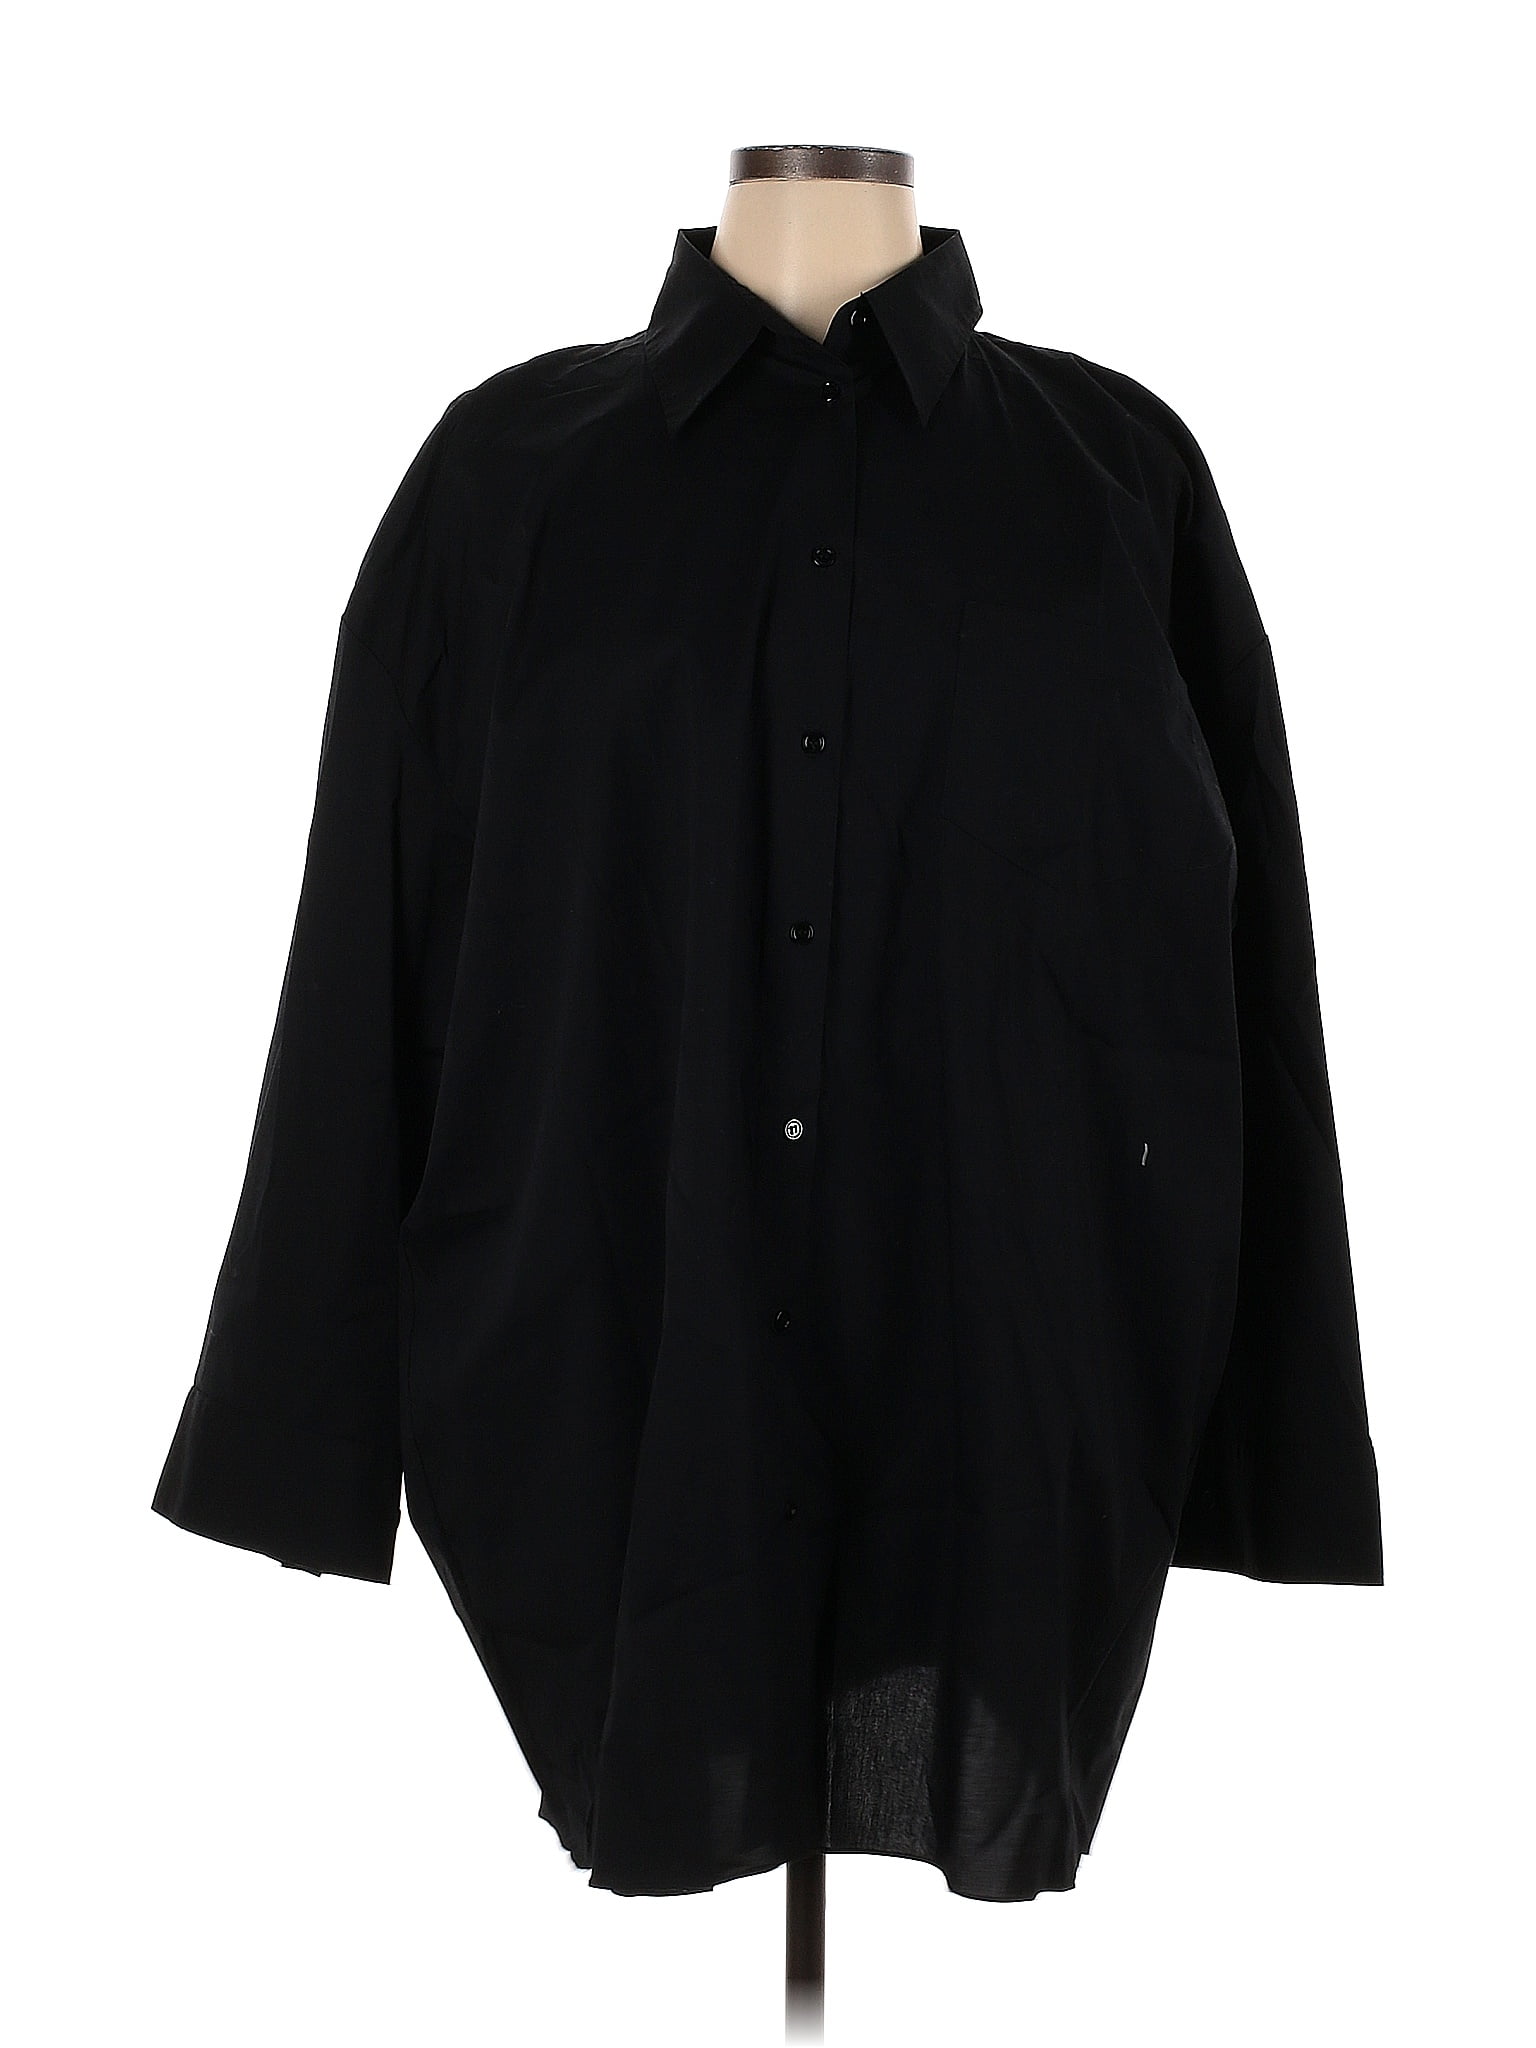 Zara Black Long Sleeve Button-Down Shirt Size XL - 53% off | thredUP